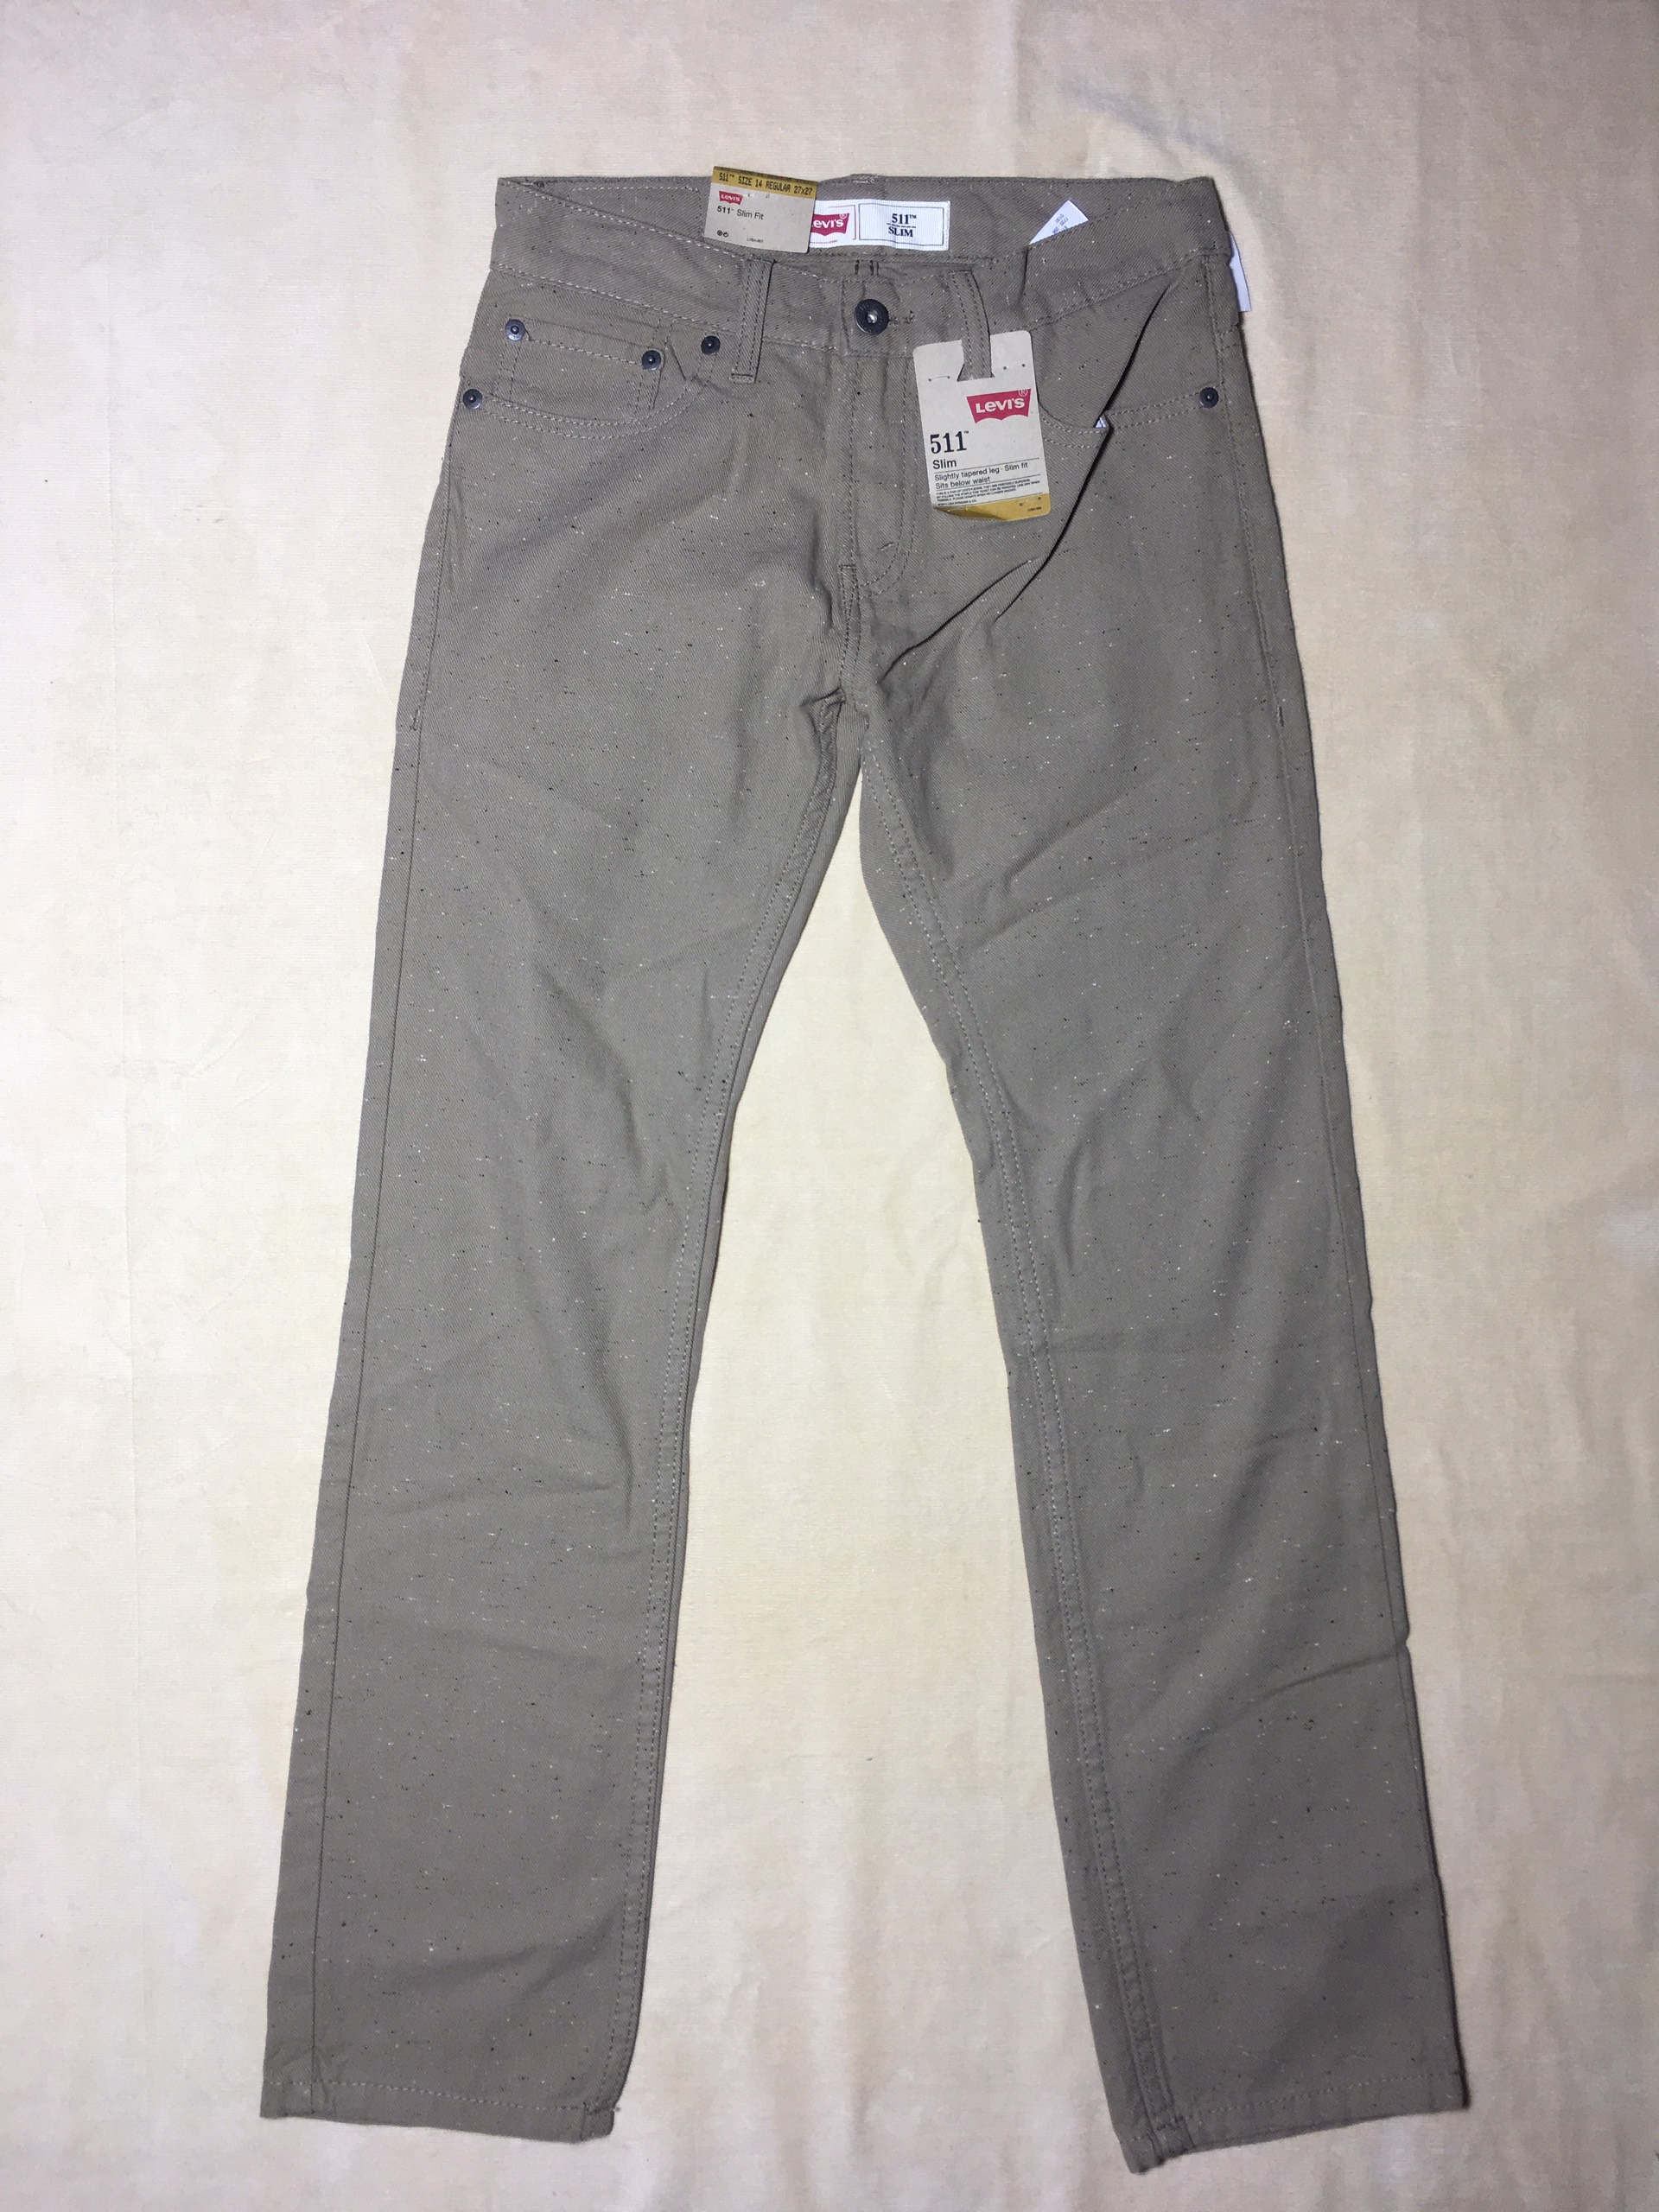 Giảm giá Quần jeans dài cotton nữ đáy ngắn ống đứng hiệu 511 Levi's slim  fit màu xám size 14 - BeeCost